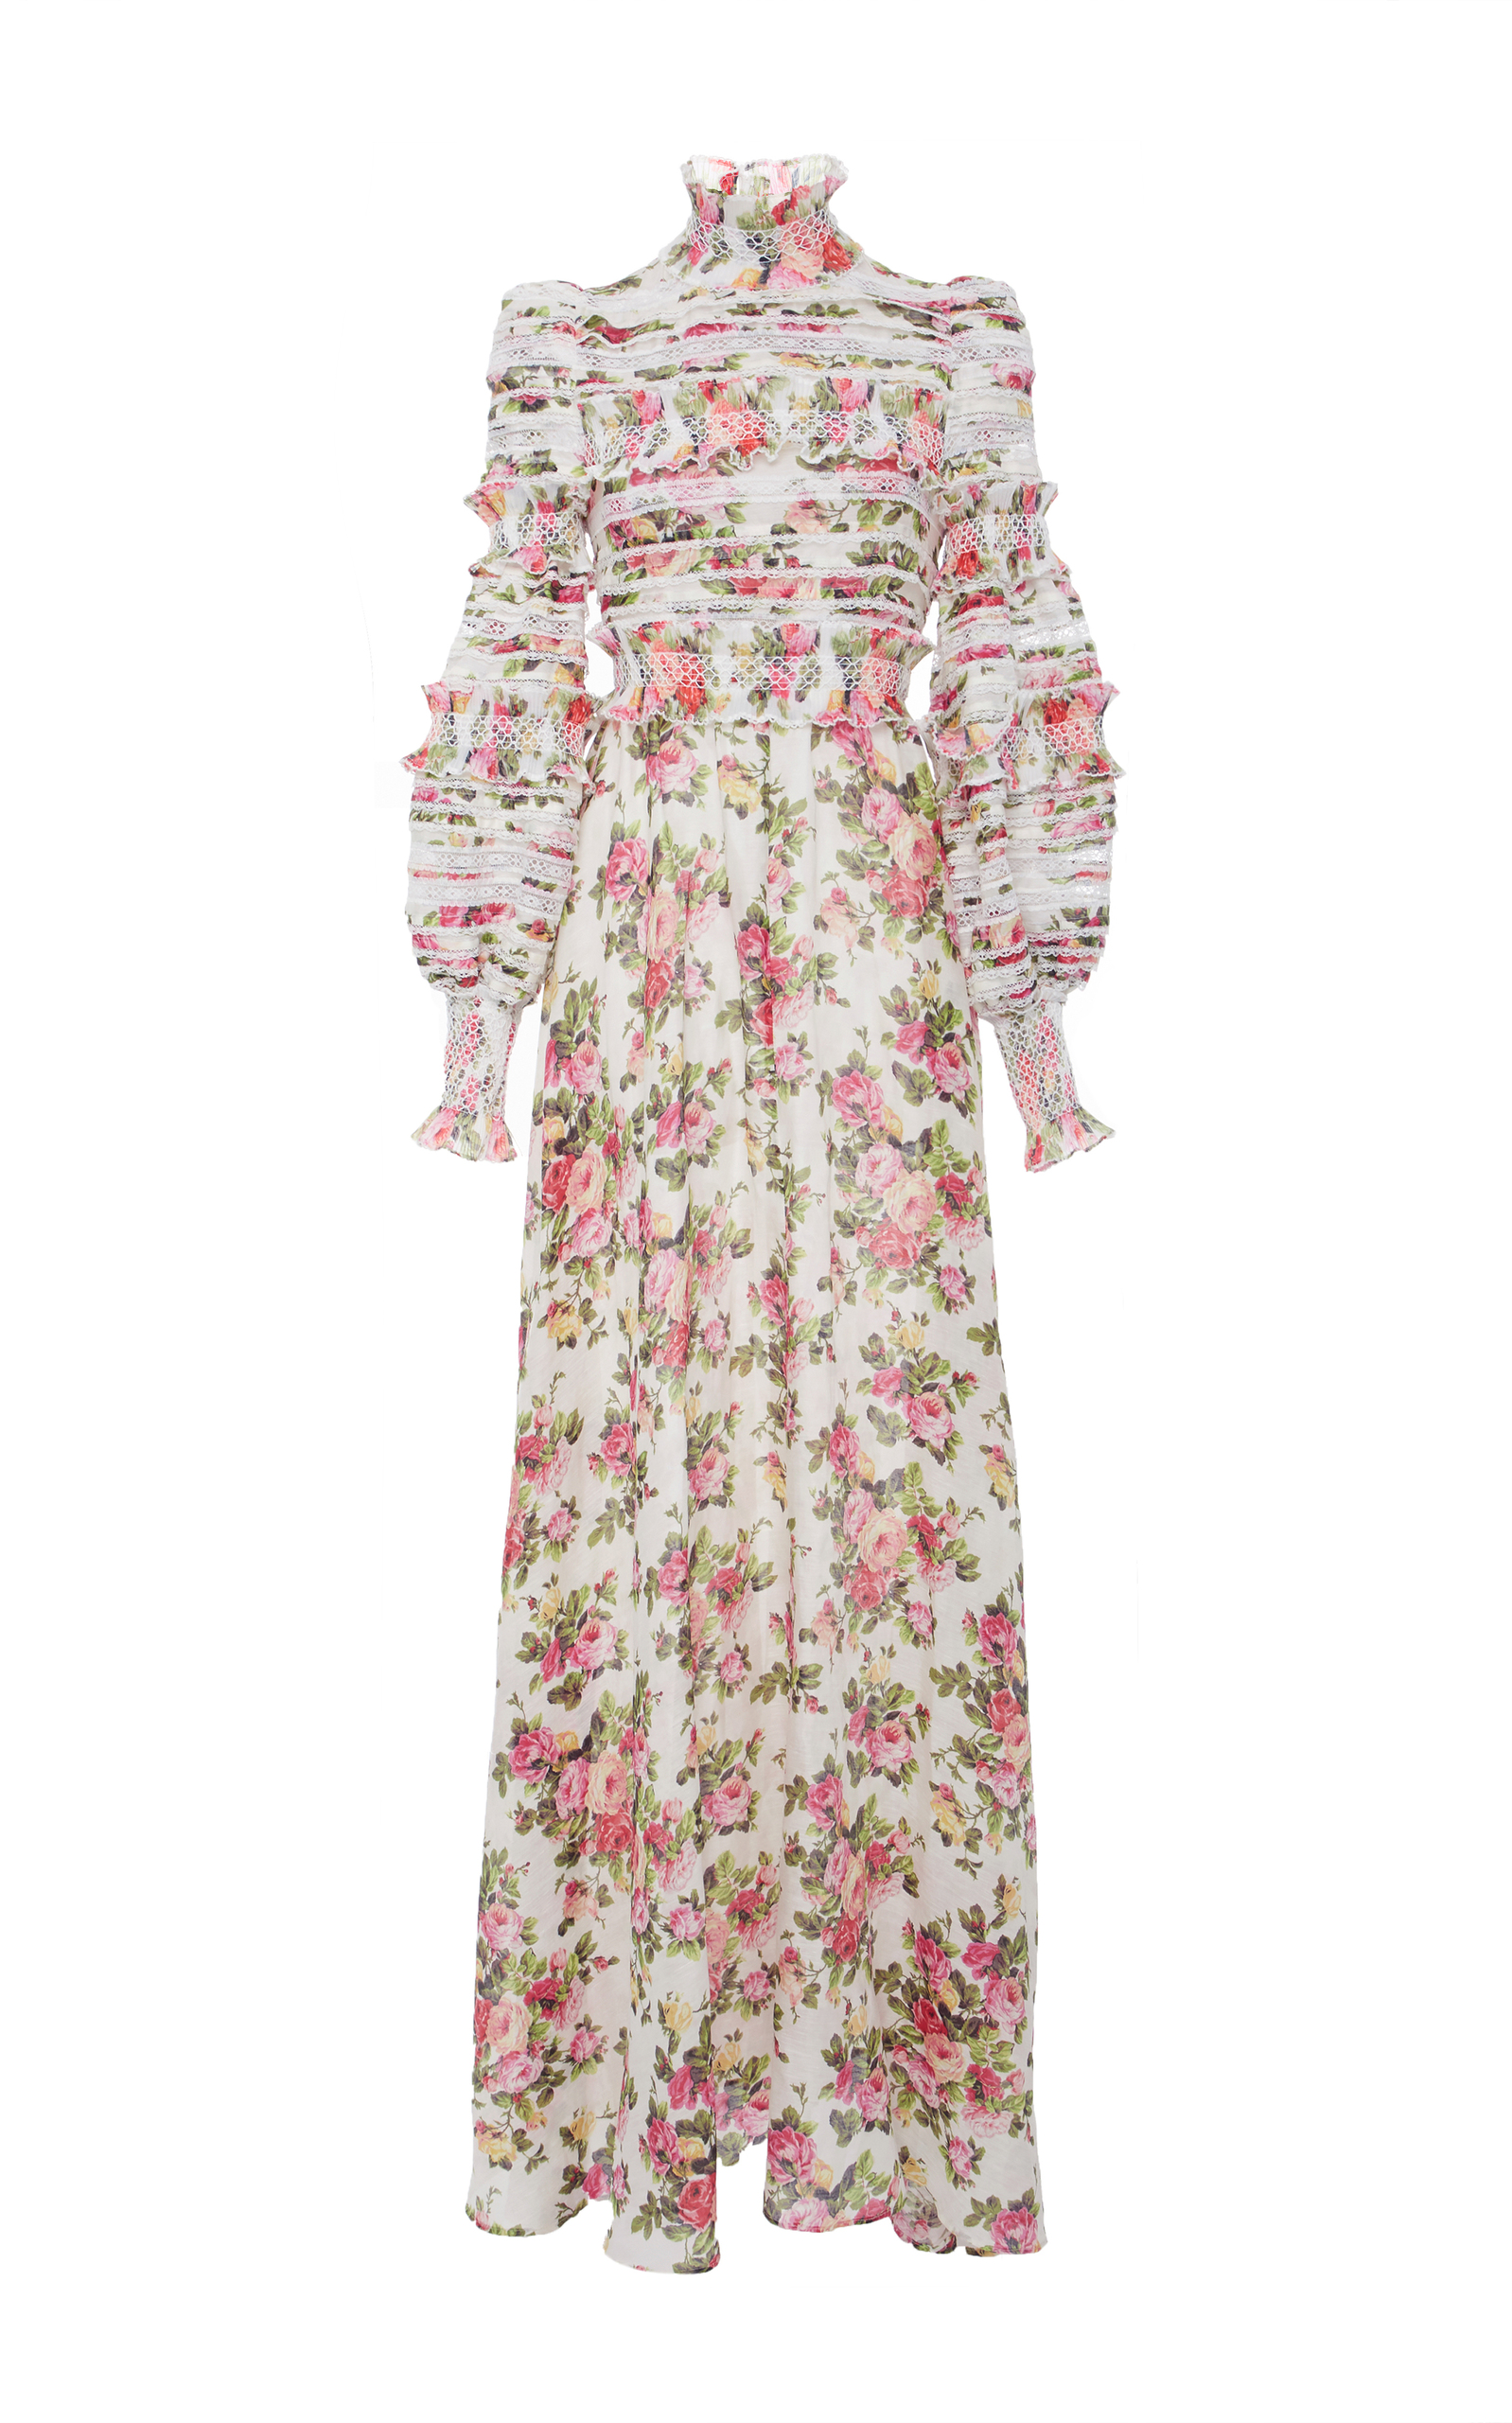 large_zimmermann-floral-sunny-smocked-dress.jpg